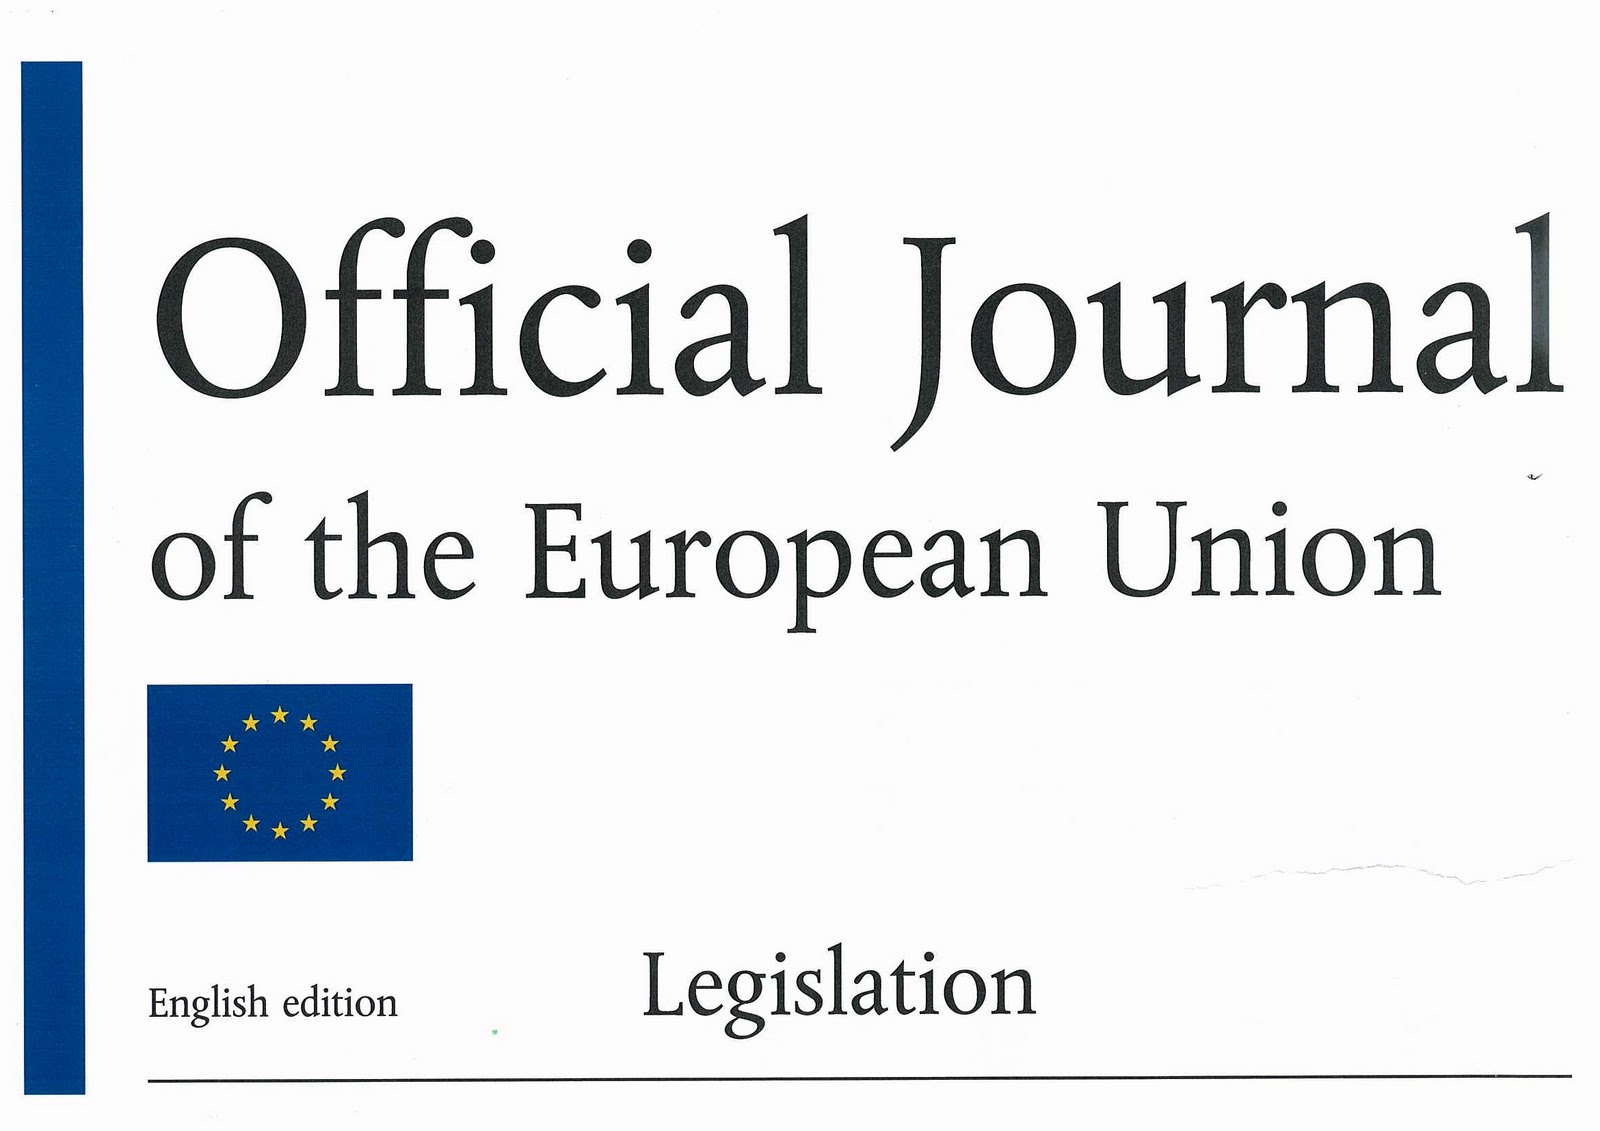 Офіційний журнал Європейського Союзу опублікував рішення про безвіз